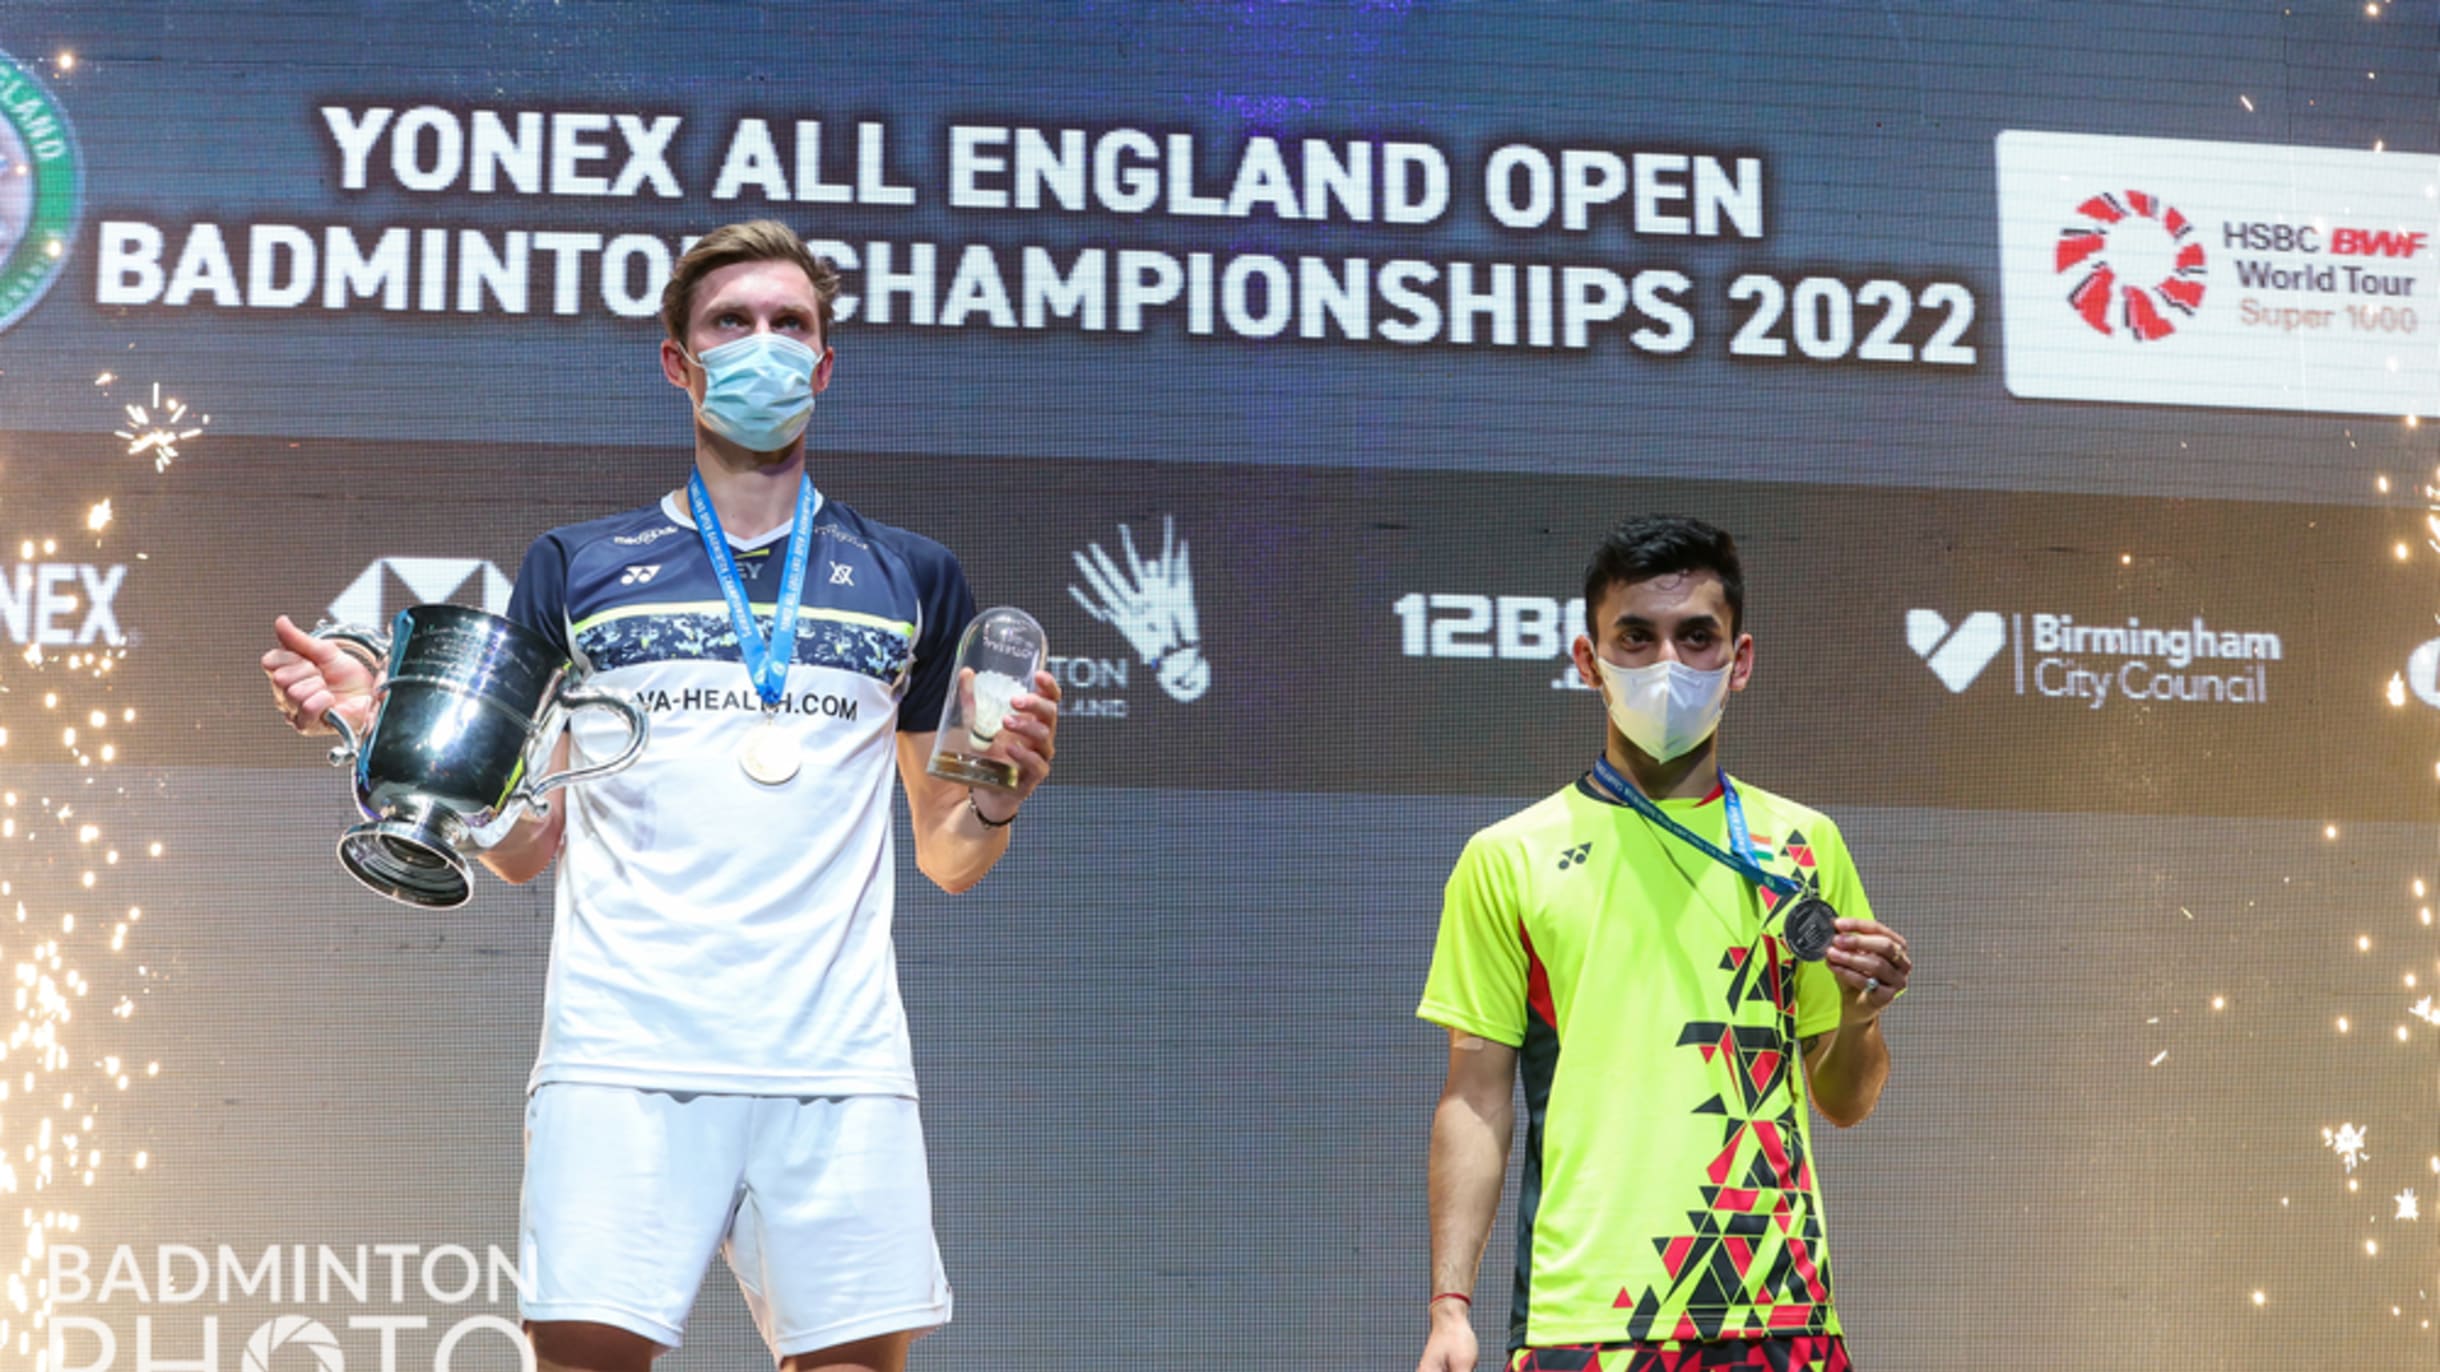 2022 badminton all england